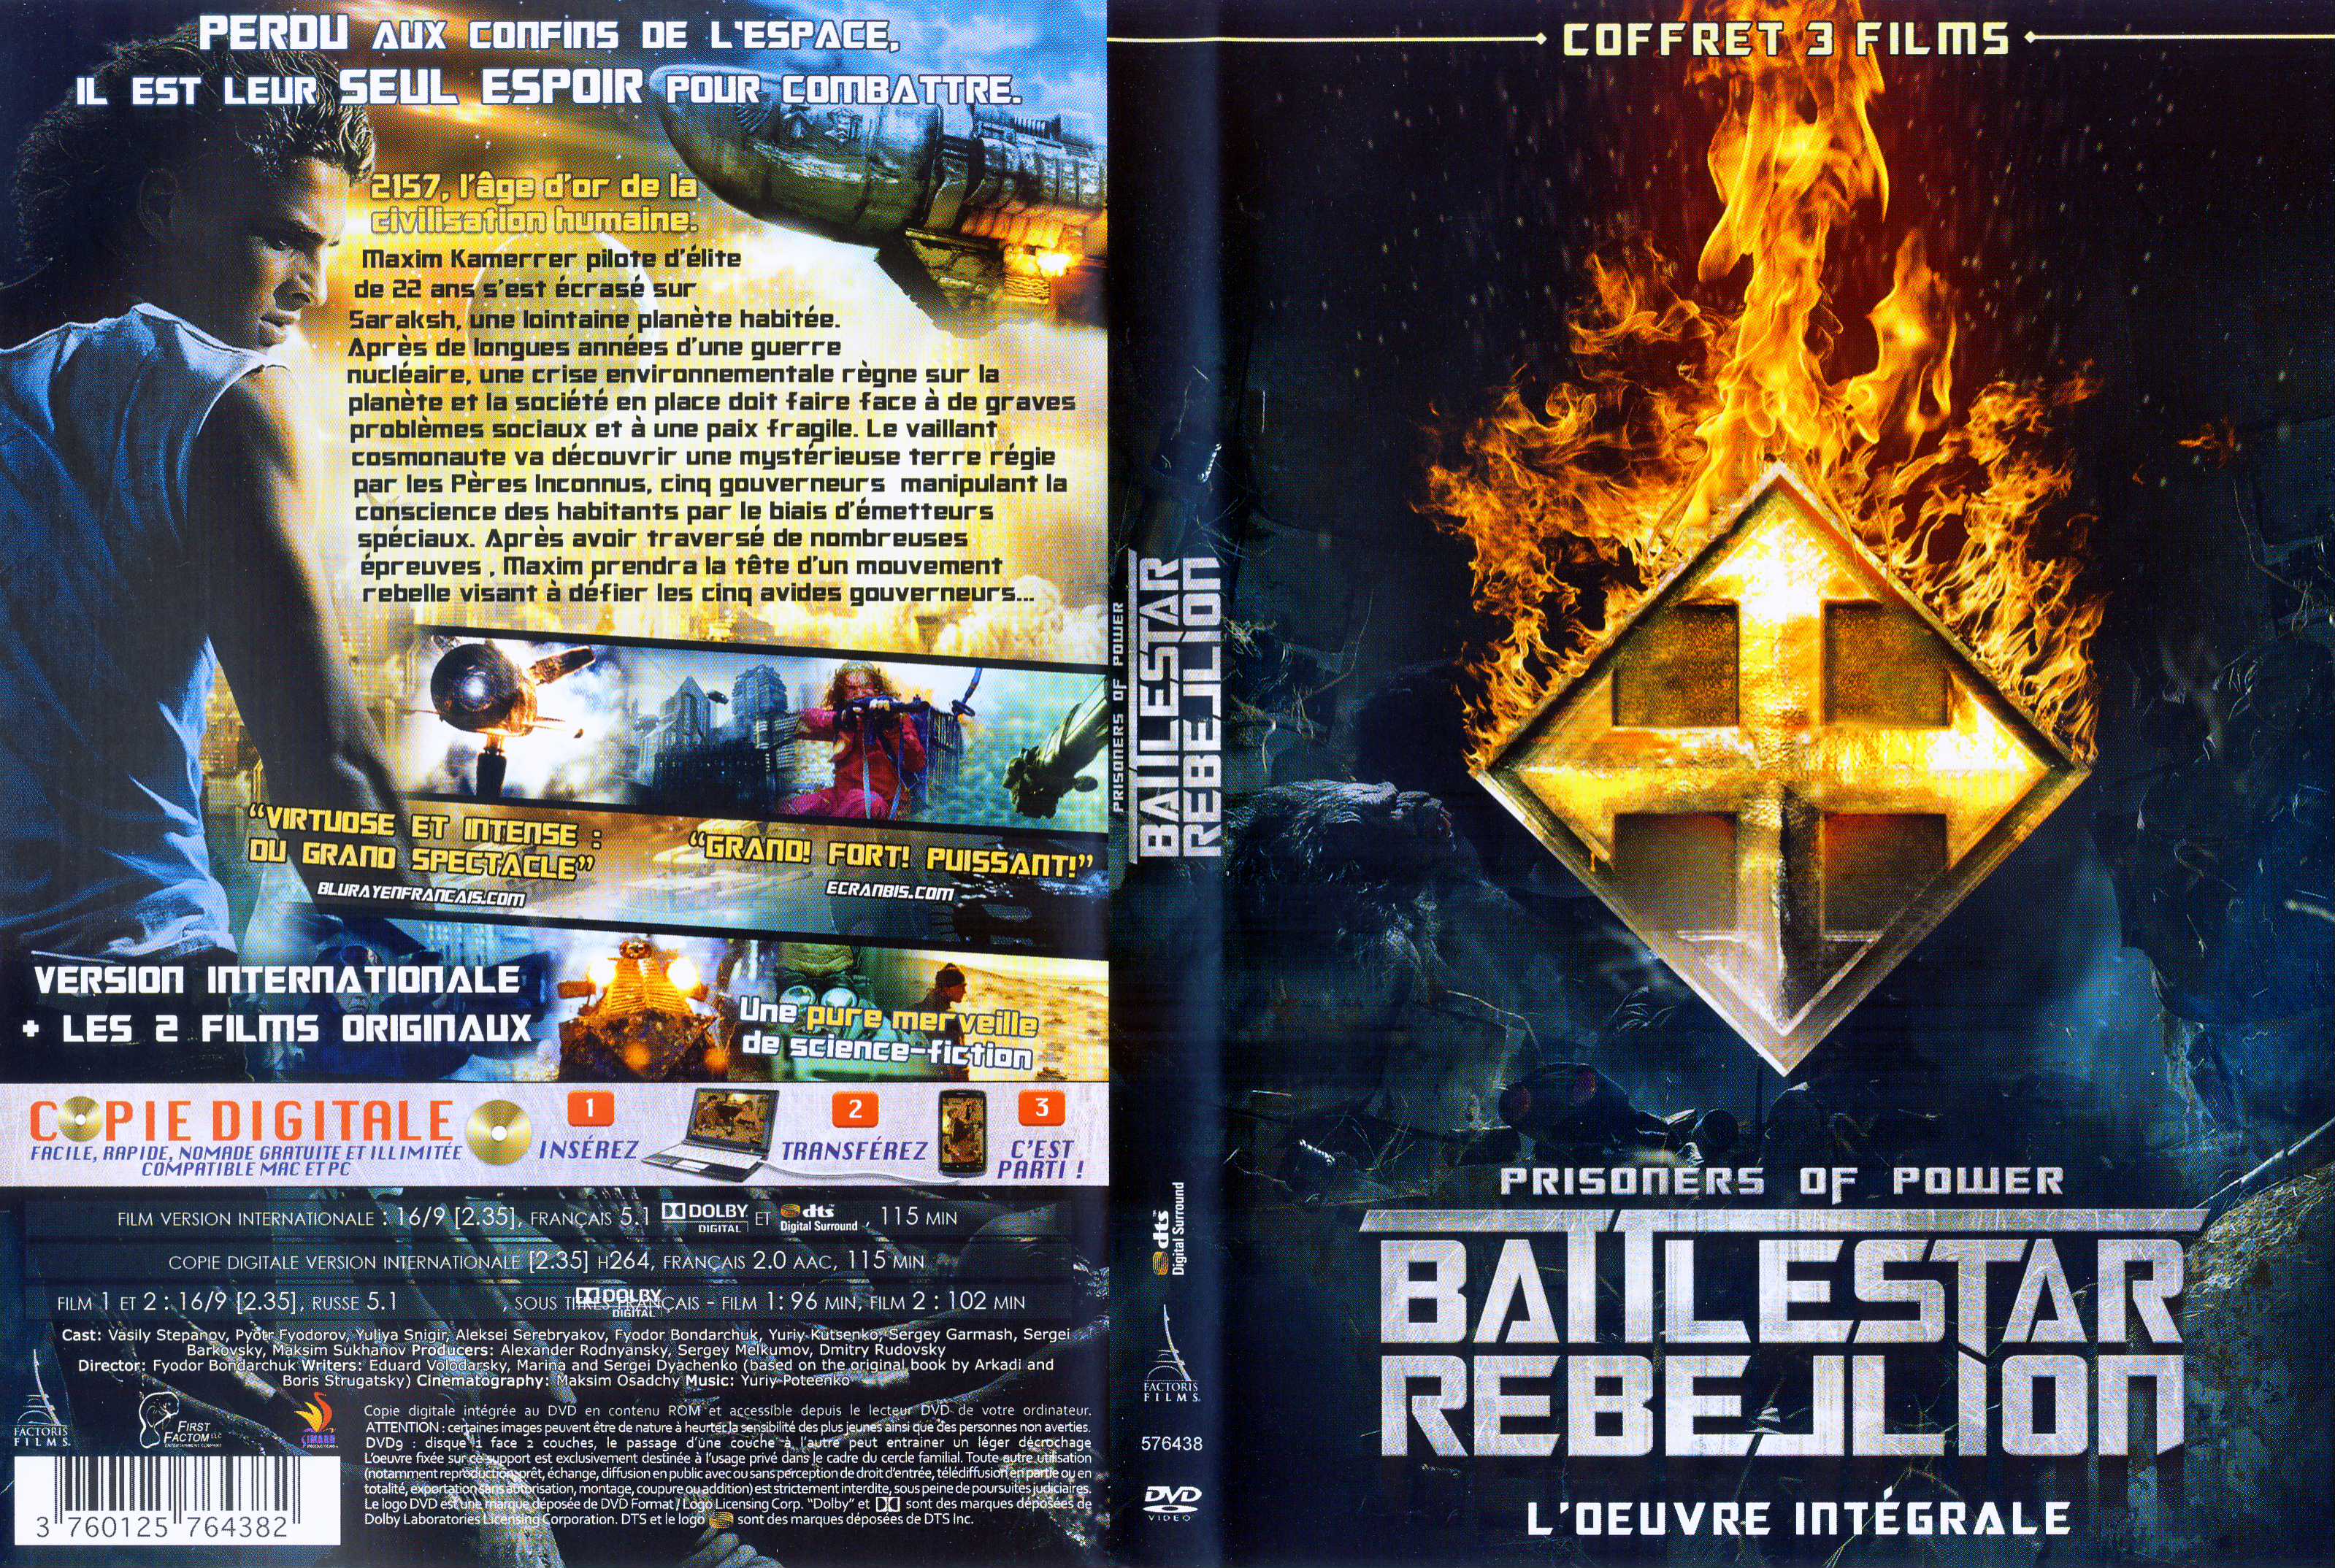 Jaquette DVD Battlestar Rebellion v2